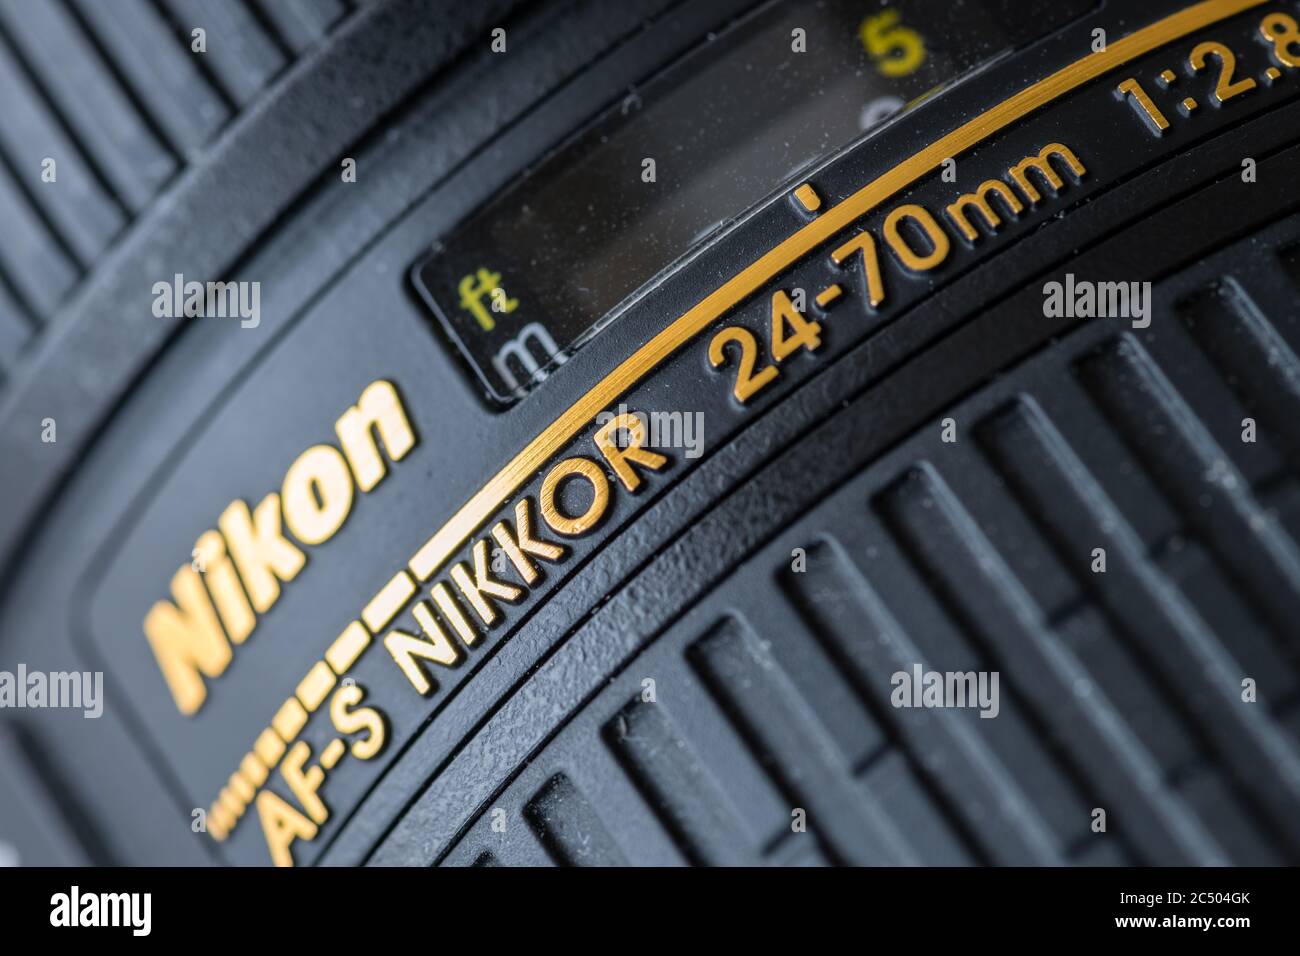 Ein Nikkor Zoomobjektiv der japanischen Firma Nikon. Stockfoto